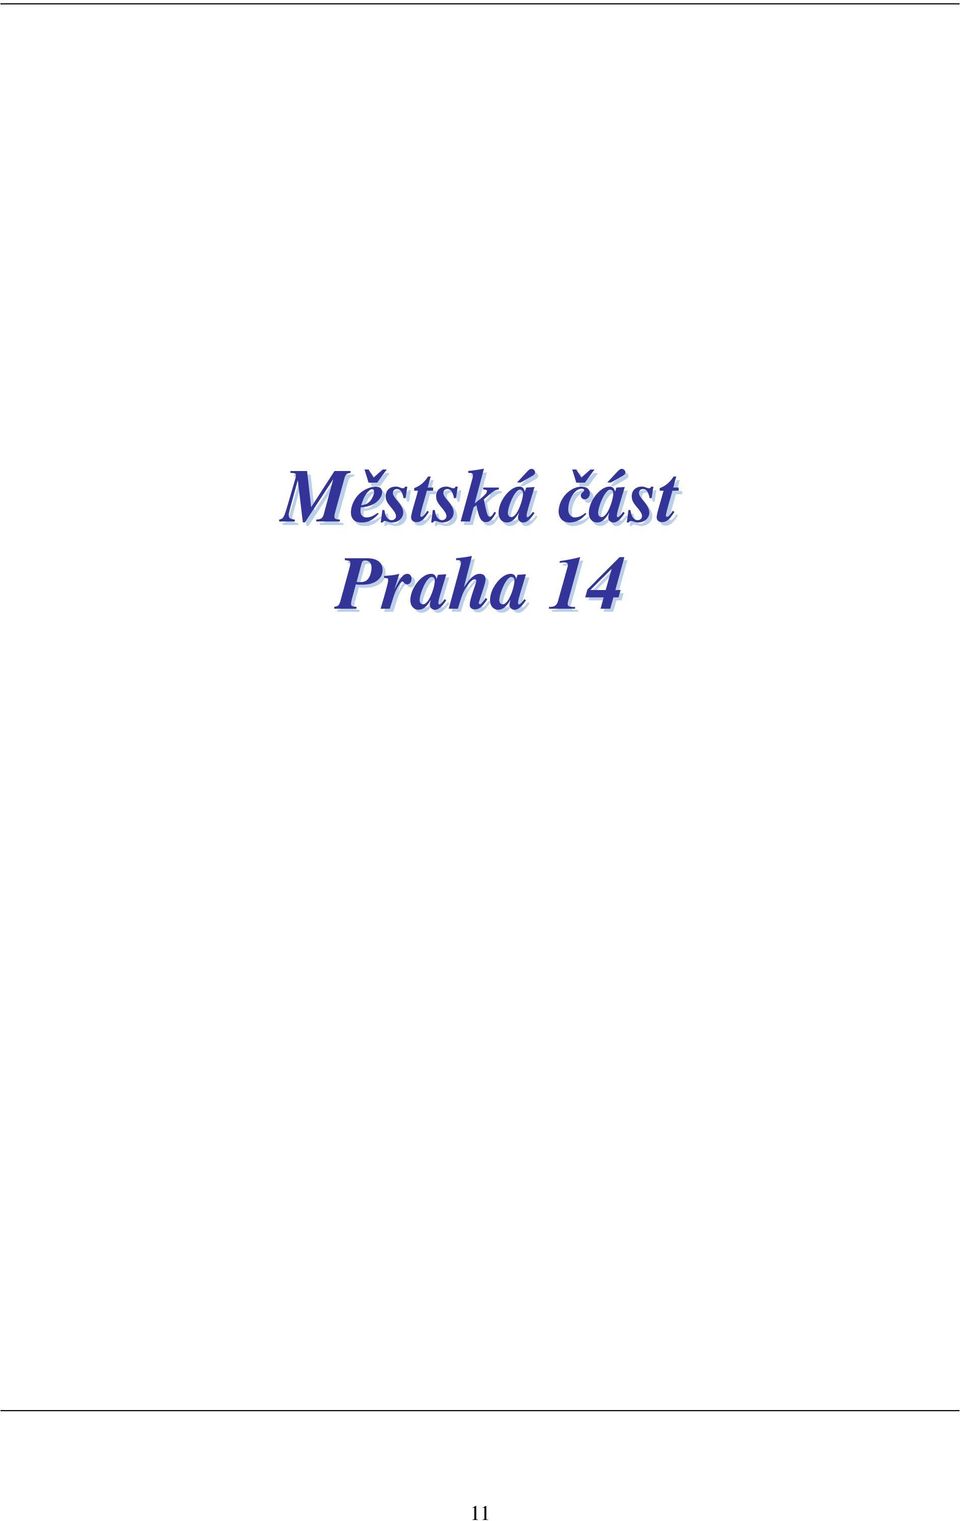 Praha 14